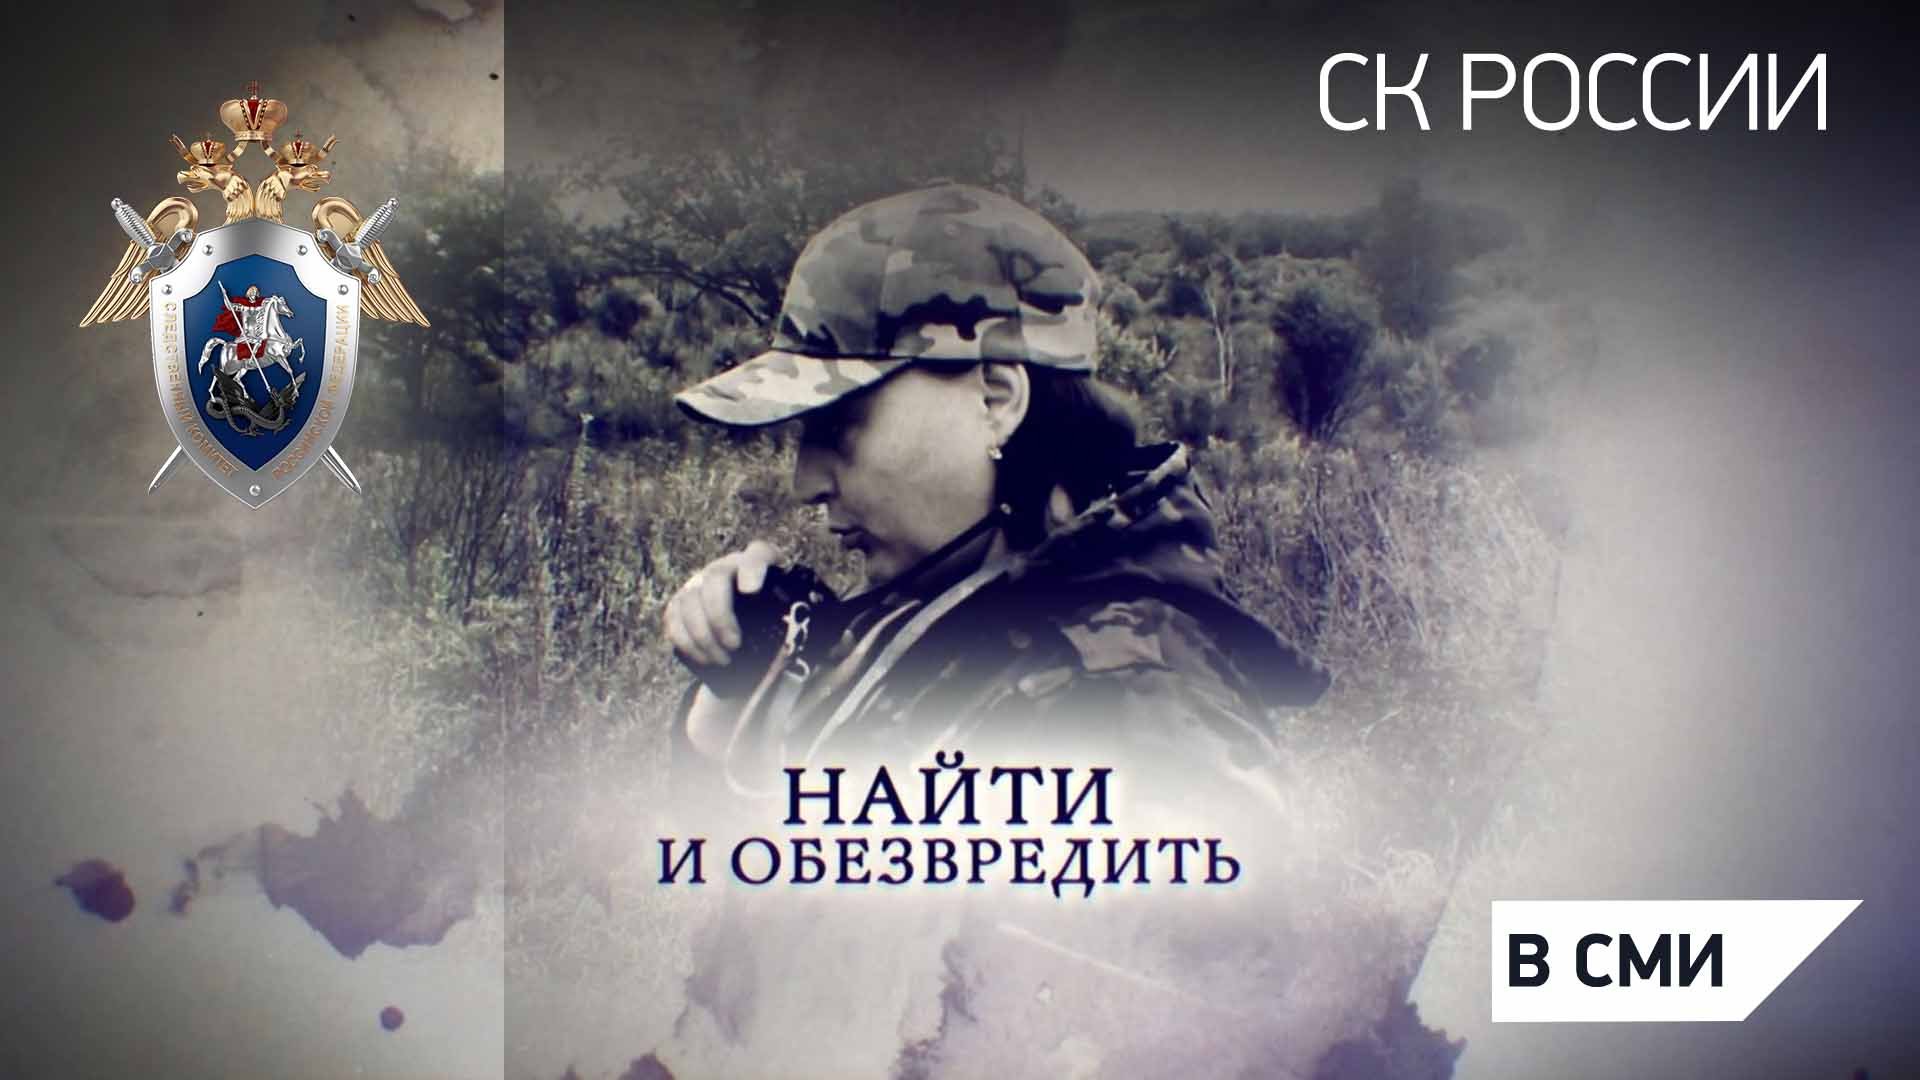 Телеканал Россия 24 = "Найти и обезвредить"